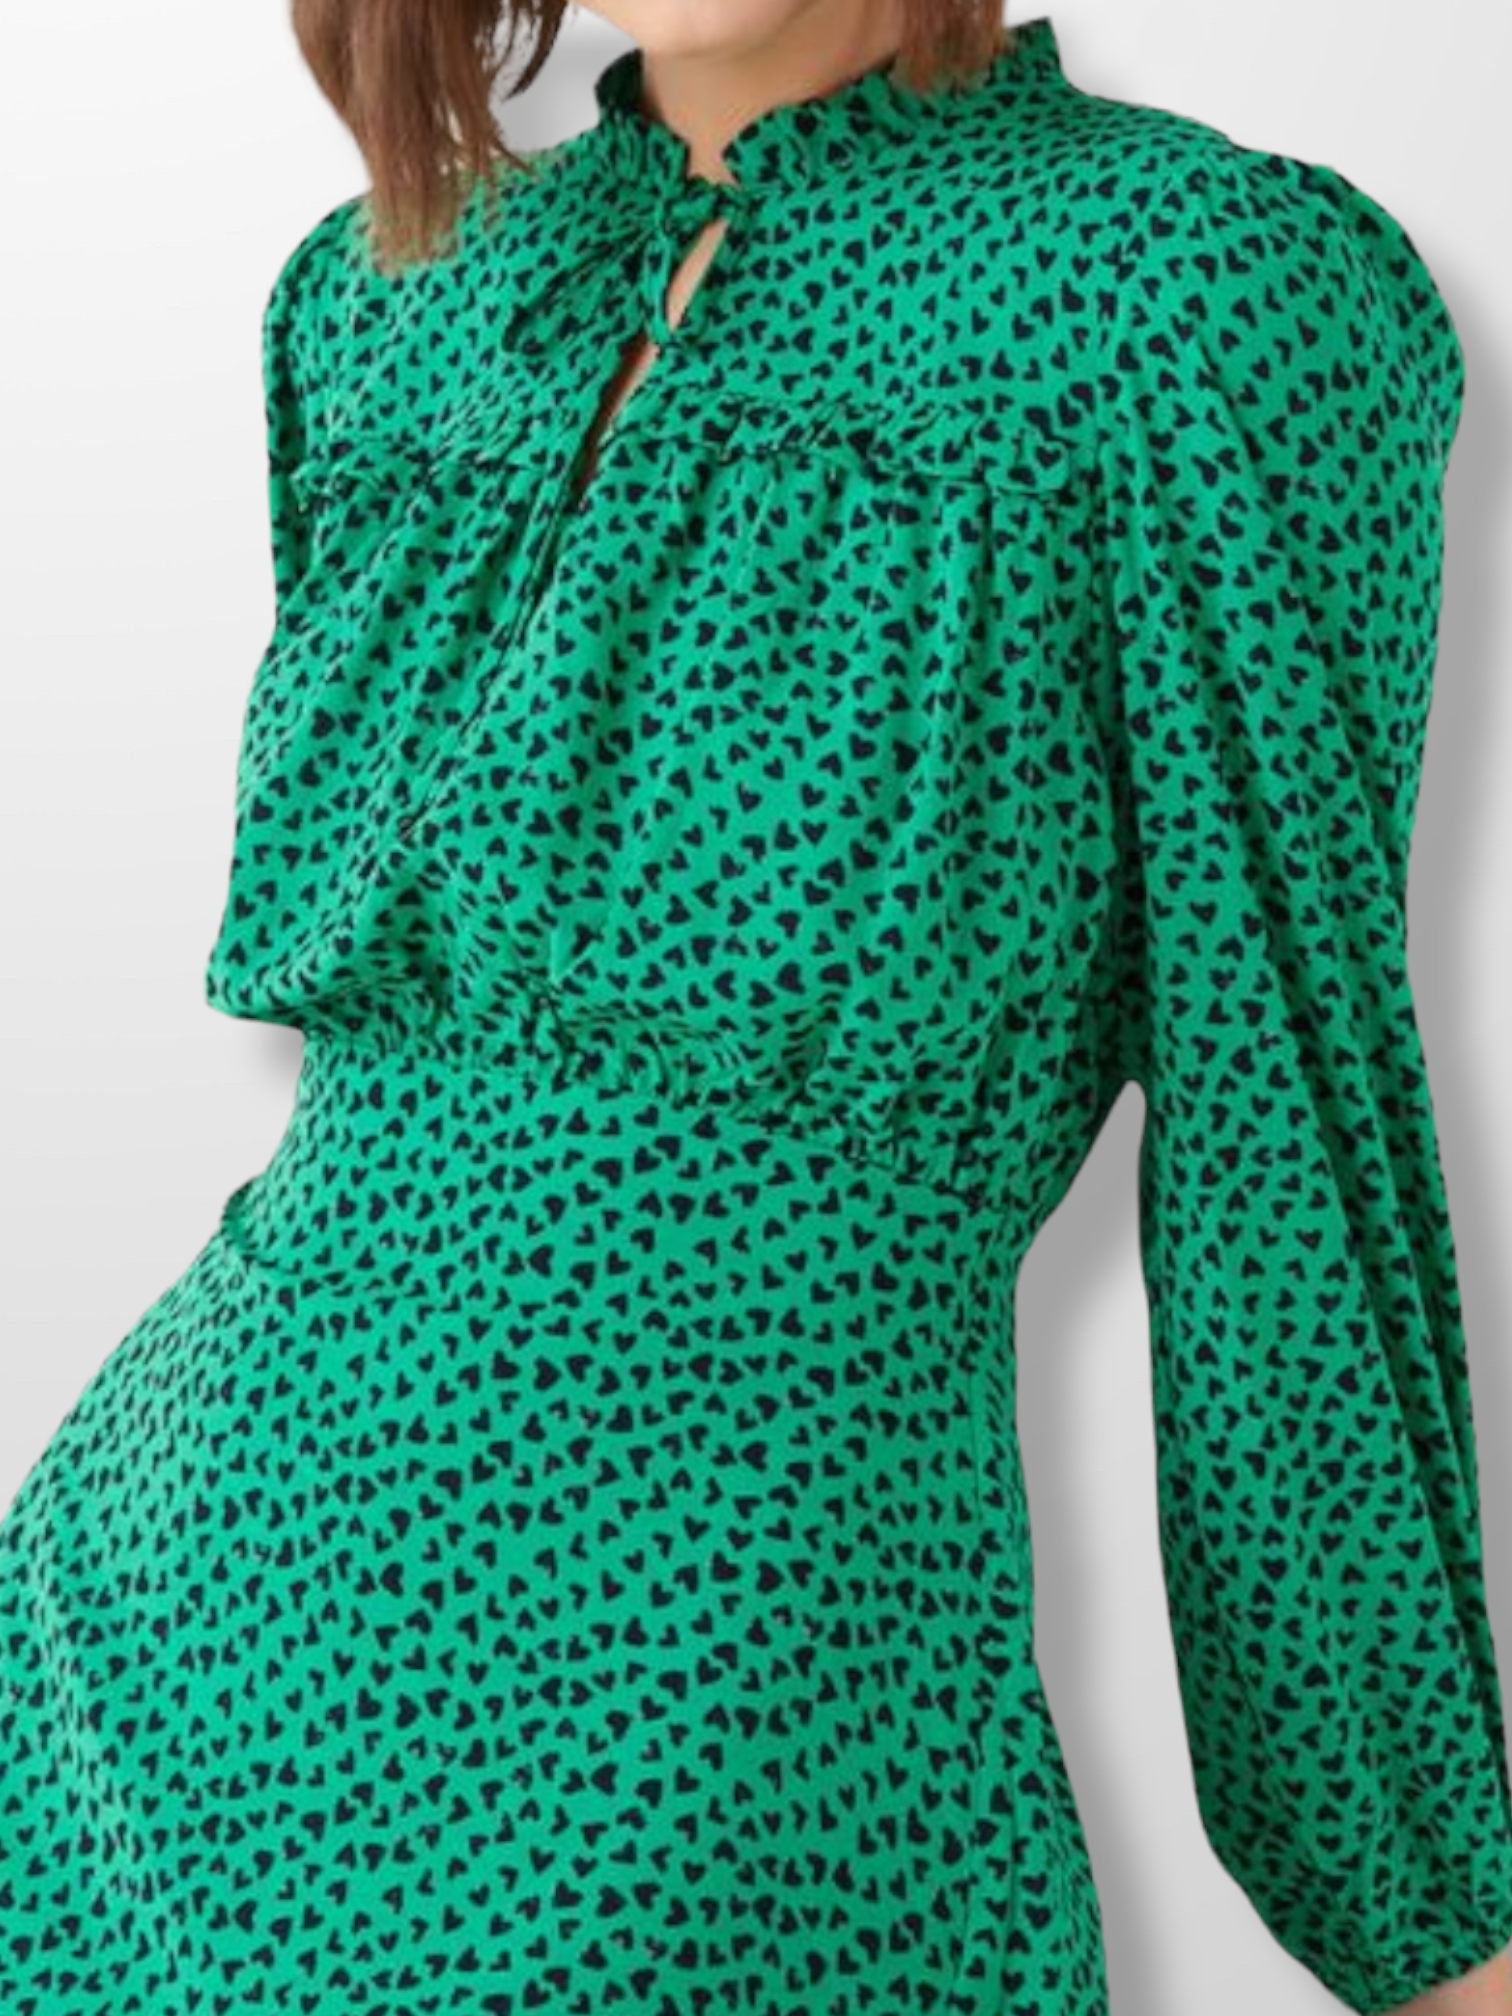 Womens green dress